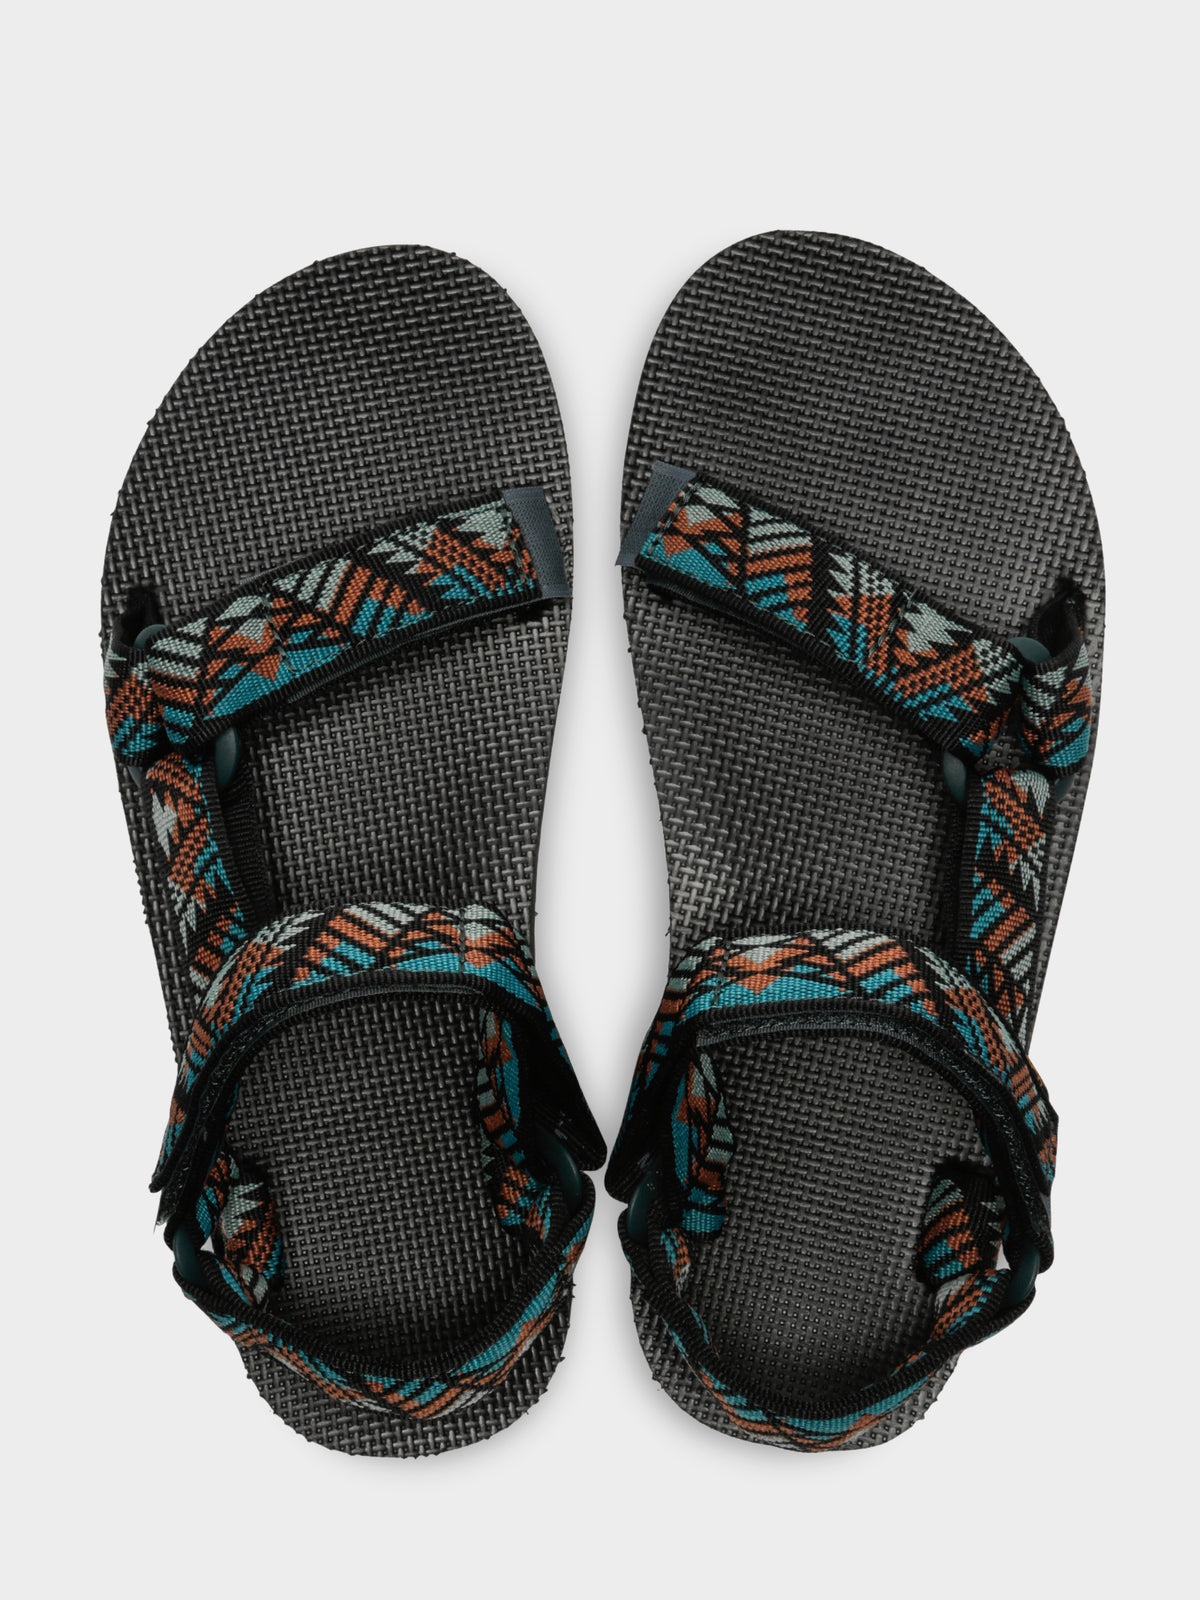 Teva Mens Original Universal Sandals in Canyon Boomerang Multi | 7